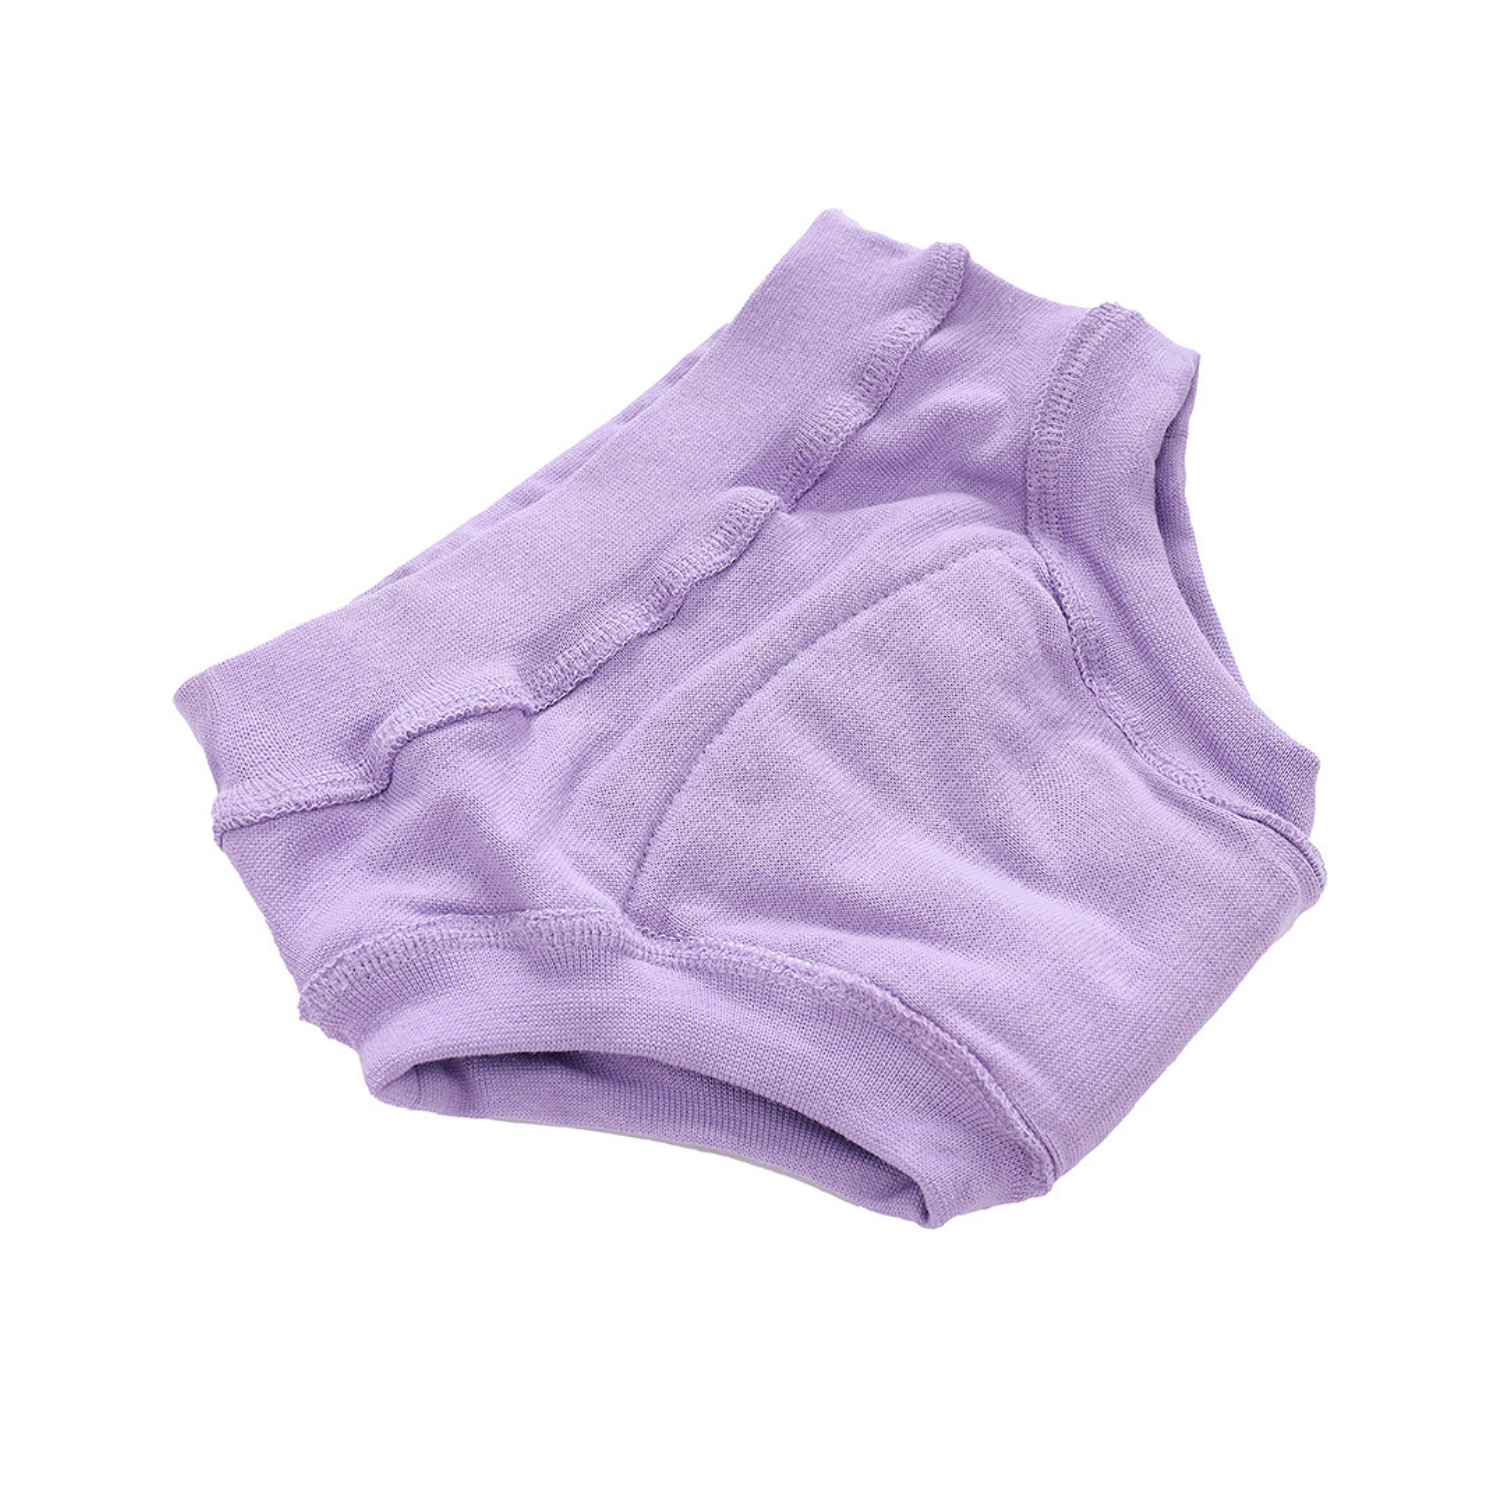 Многоразовые трусики Mums Era для приучения к горшку фиолетовые размер 92 (10-15 кг) - фото 9